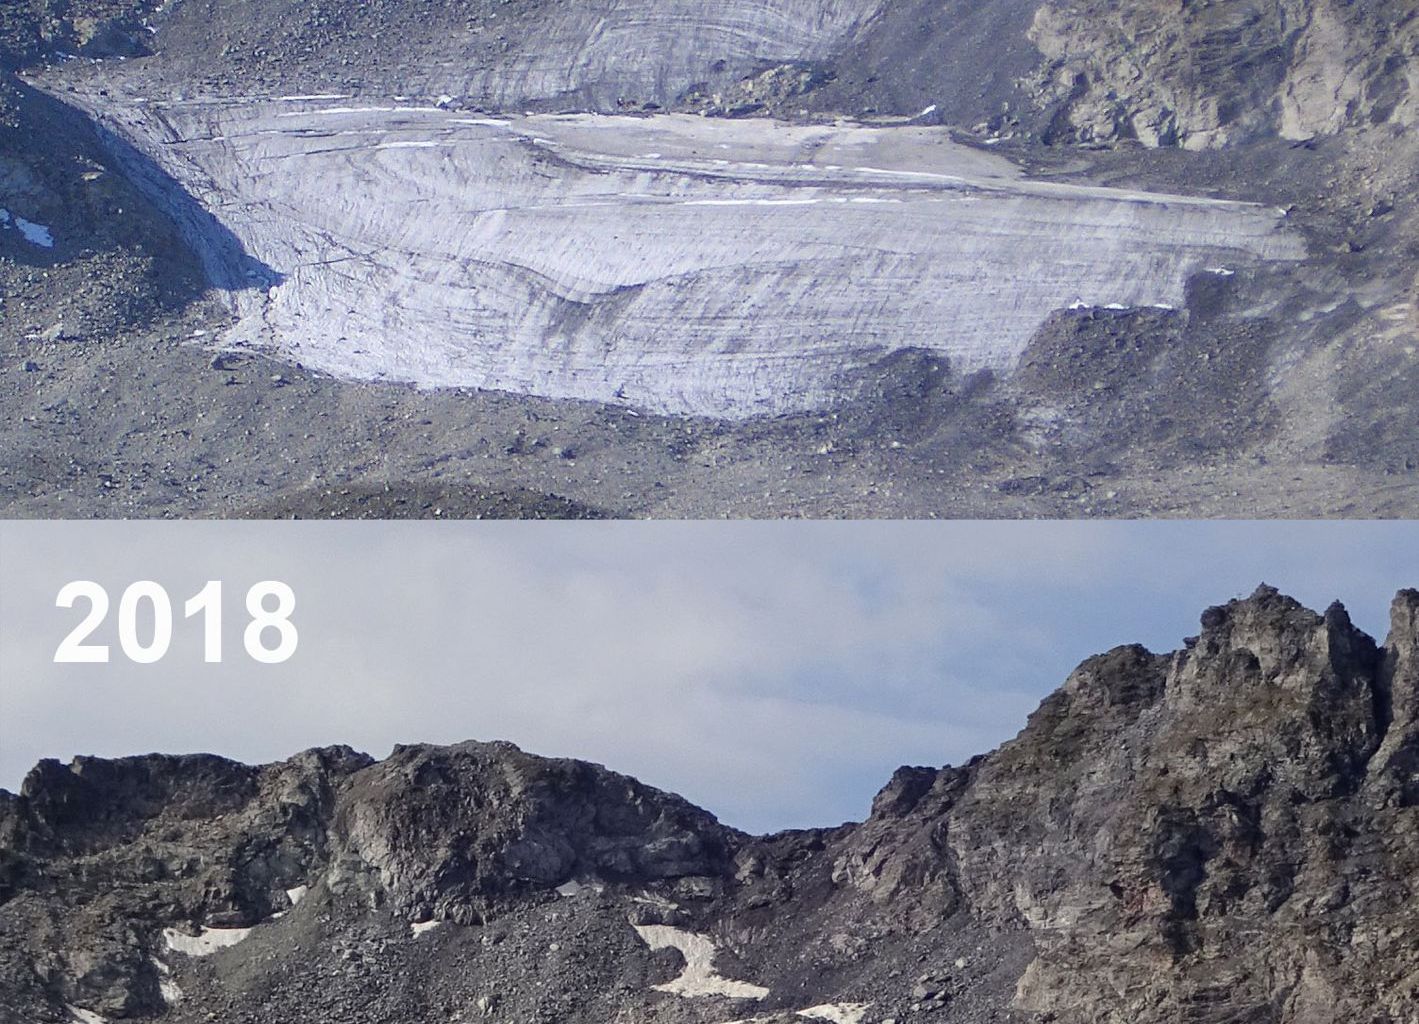 Le glacier de Pizol (SG) s'est vraiment désintégré cet été 2018 et le reste de la glace est fortement couvert de débris.